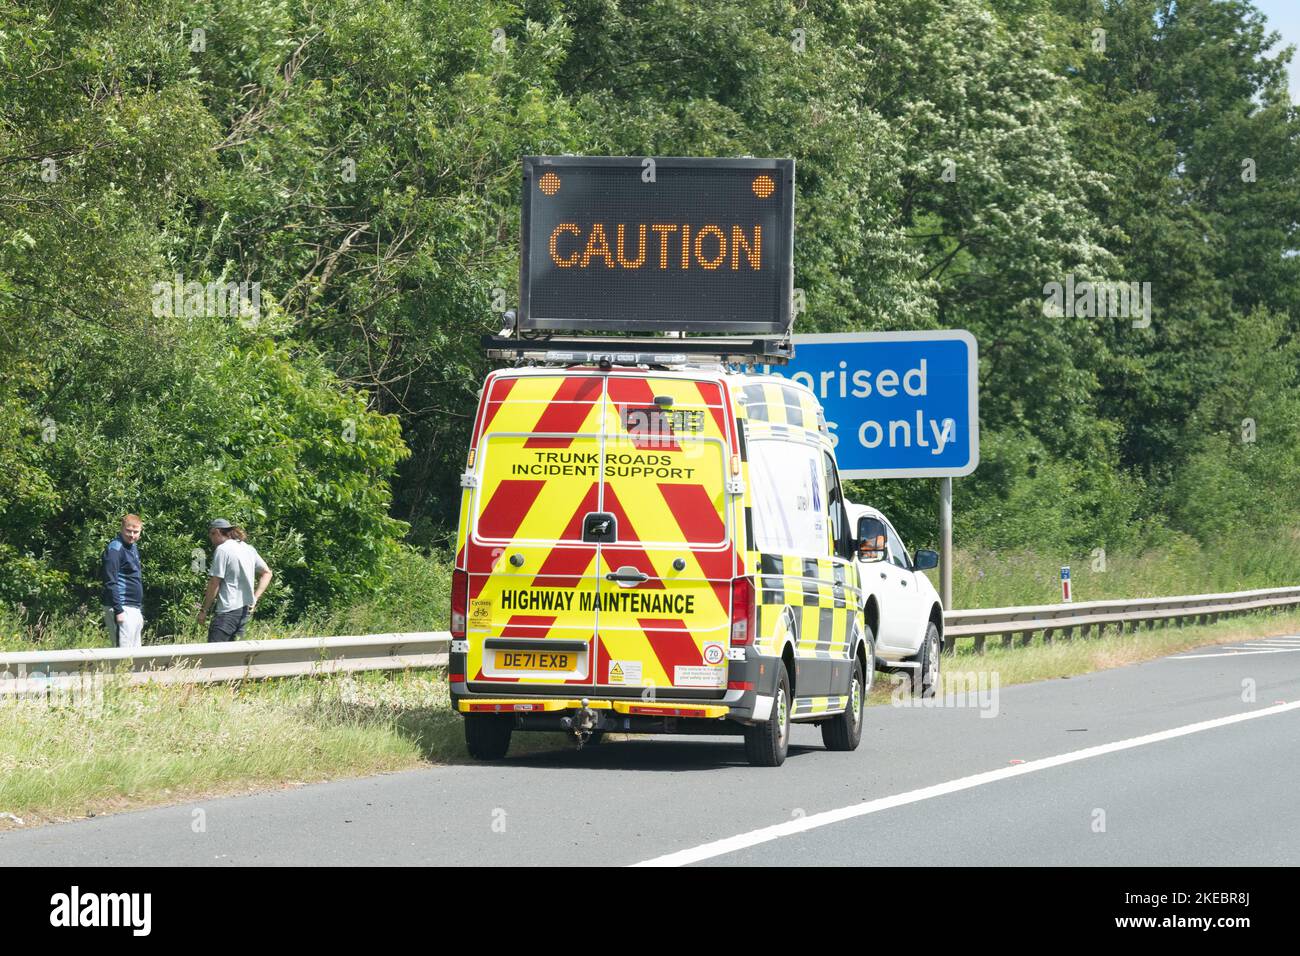 Amey Trunk Road Incident Support Service (TISS) Fahrzeug mit Warnschild, das den Fahrer auf eine Panne auf der harten Schulter der Autobahn, Großbritannien, hinweist Stockfoto